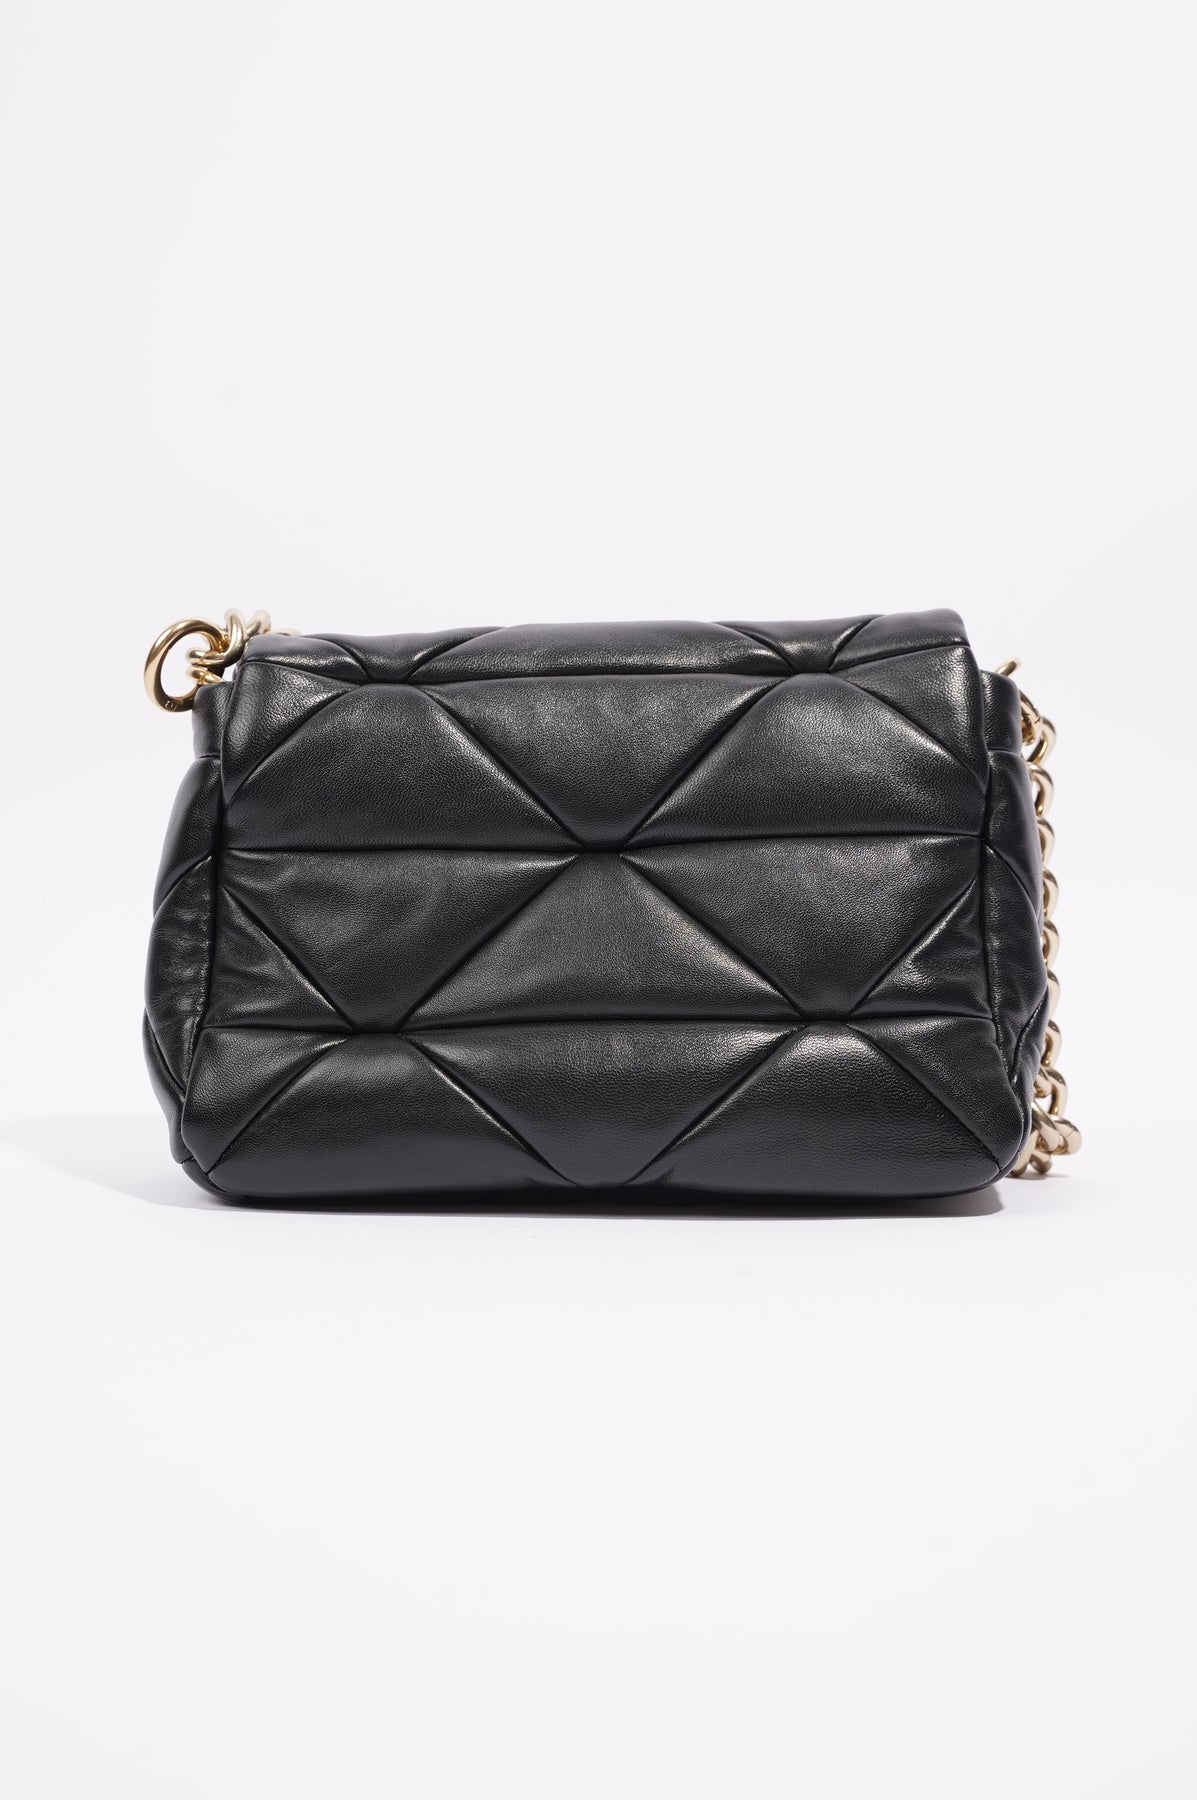 Prada - Women's System Nappa Patchwork Bag Shoulder Bag - Black - Leather